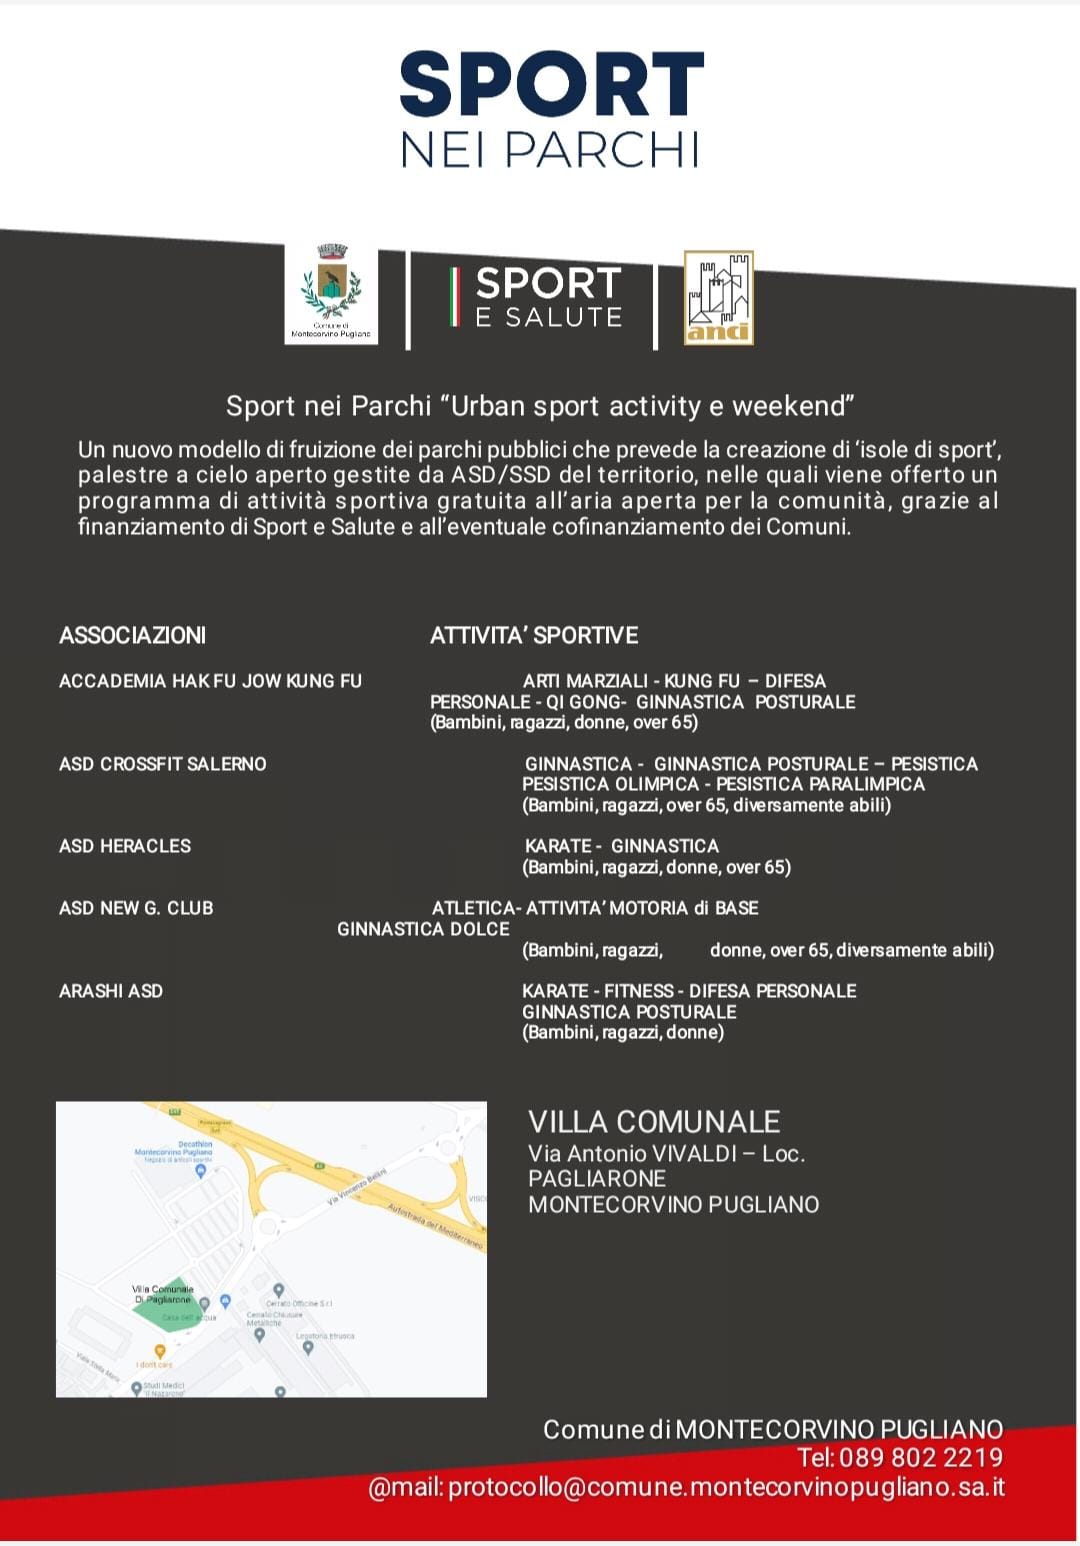 Montecorvino Pugliano: ASD/SSD, Sport nei Parchi